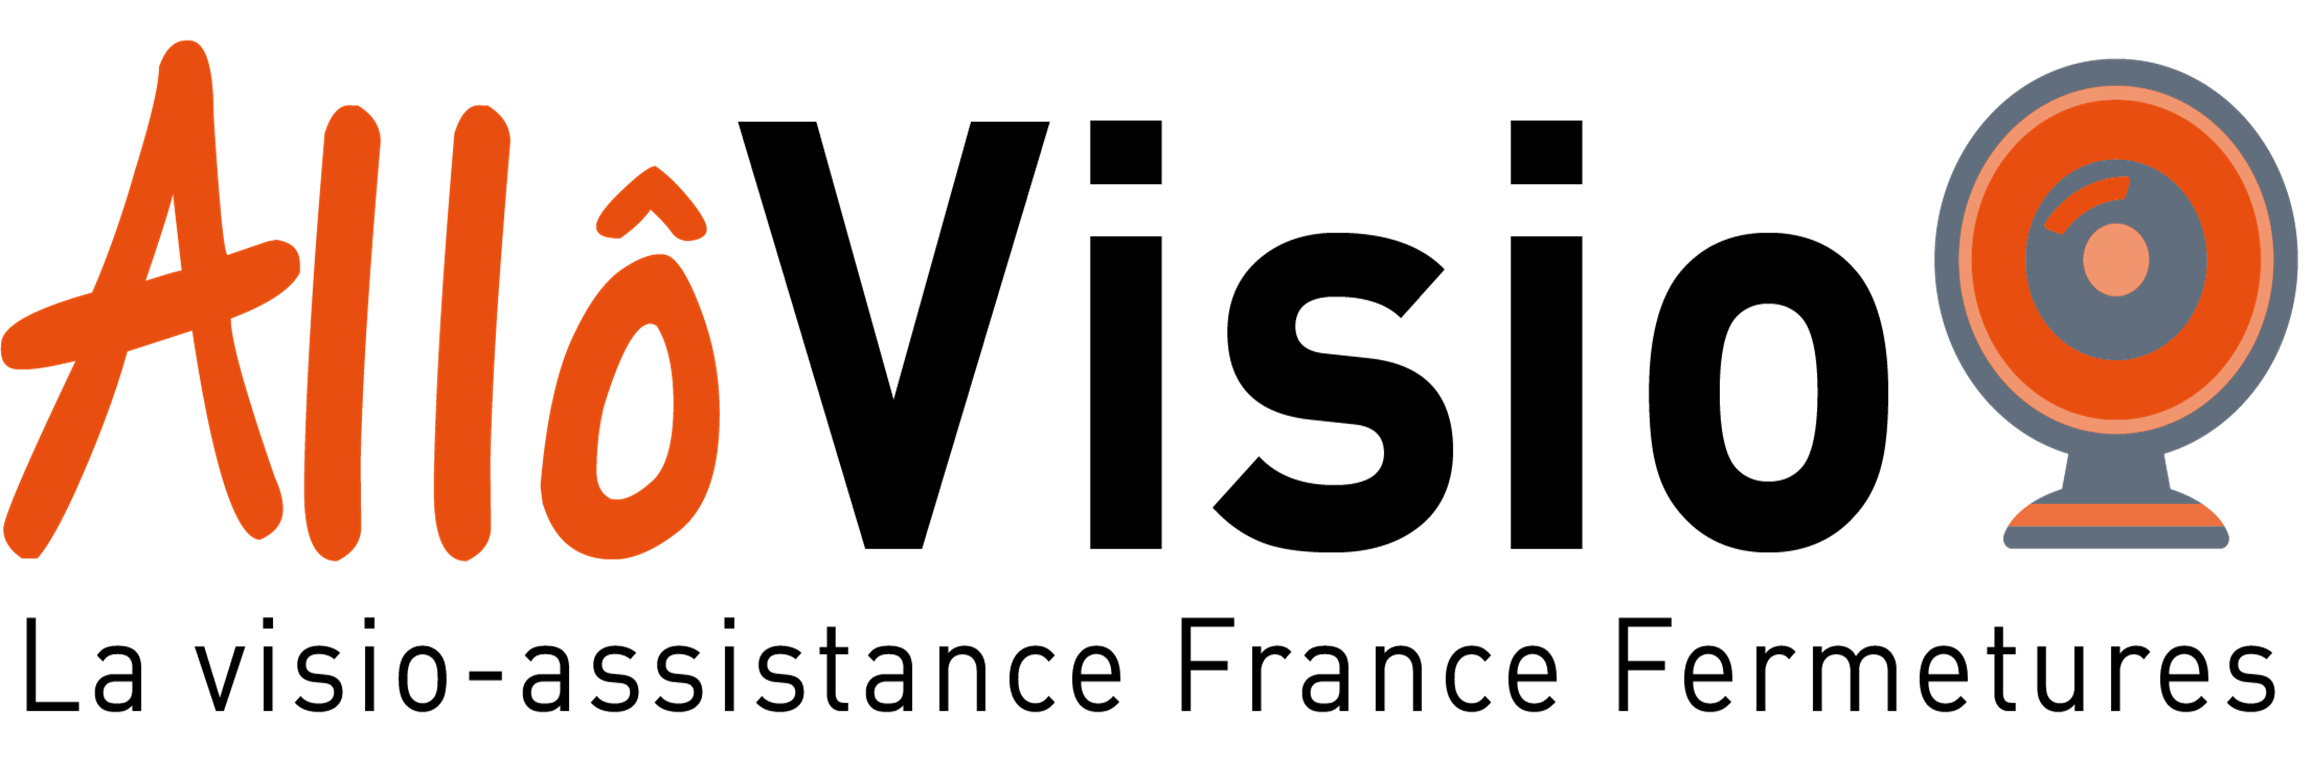 Allô Visio : le nouveau service de visio assistance sur chantier alliant rapidité, efficacité & déplacements limités